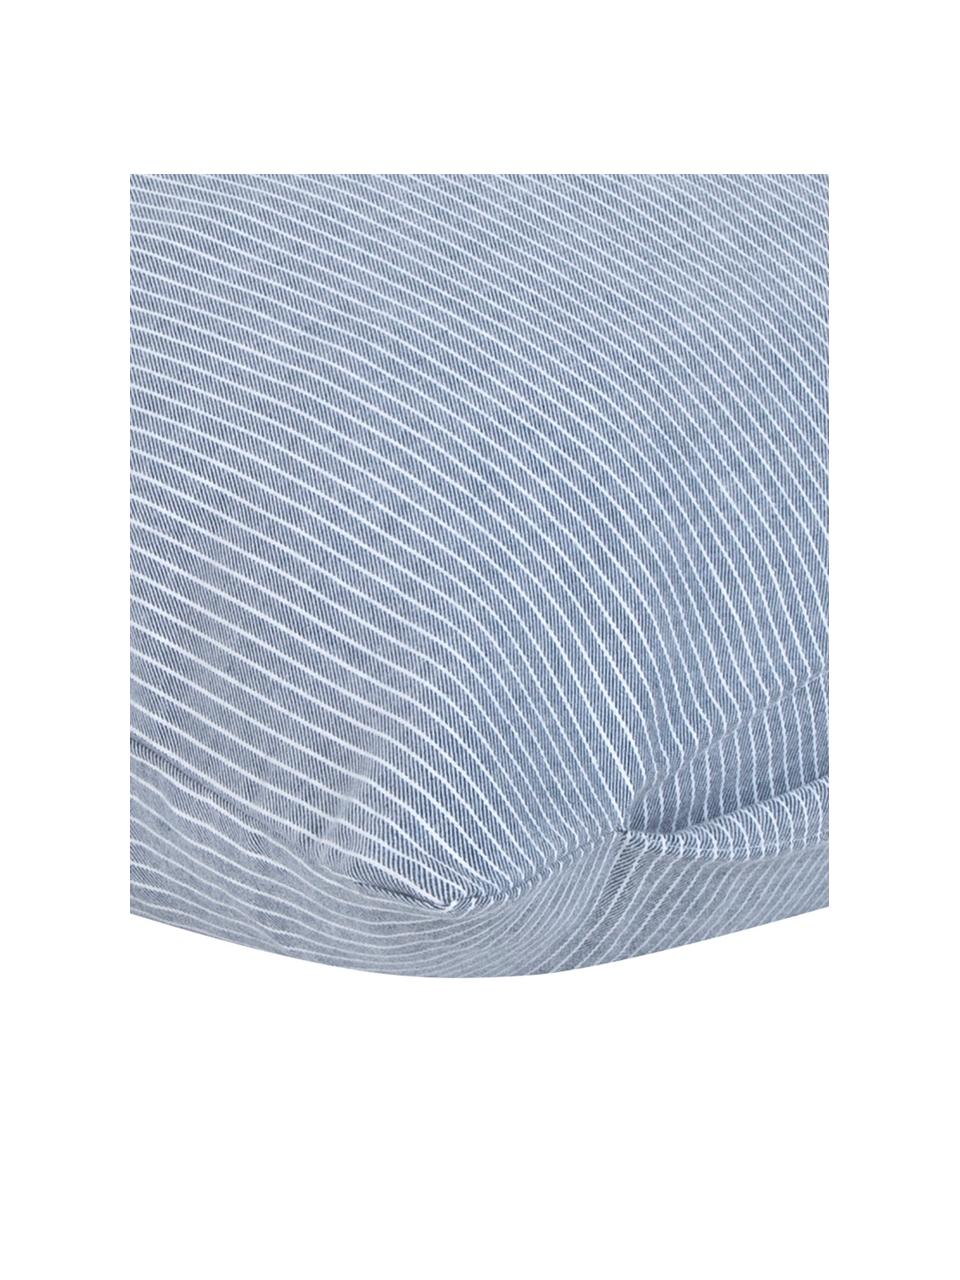 Poszewka na poduszkę z flaneli Rae, 2 szt., Niebieski, biały, S 40 x D 80 cm